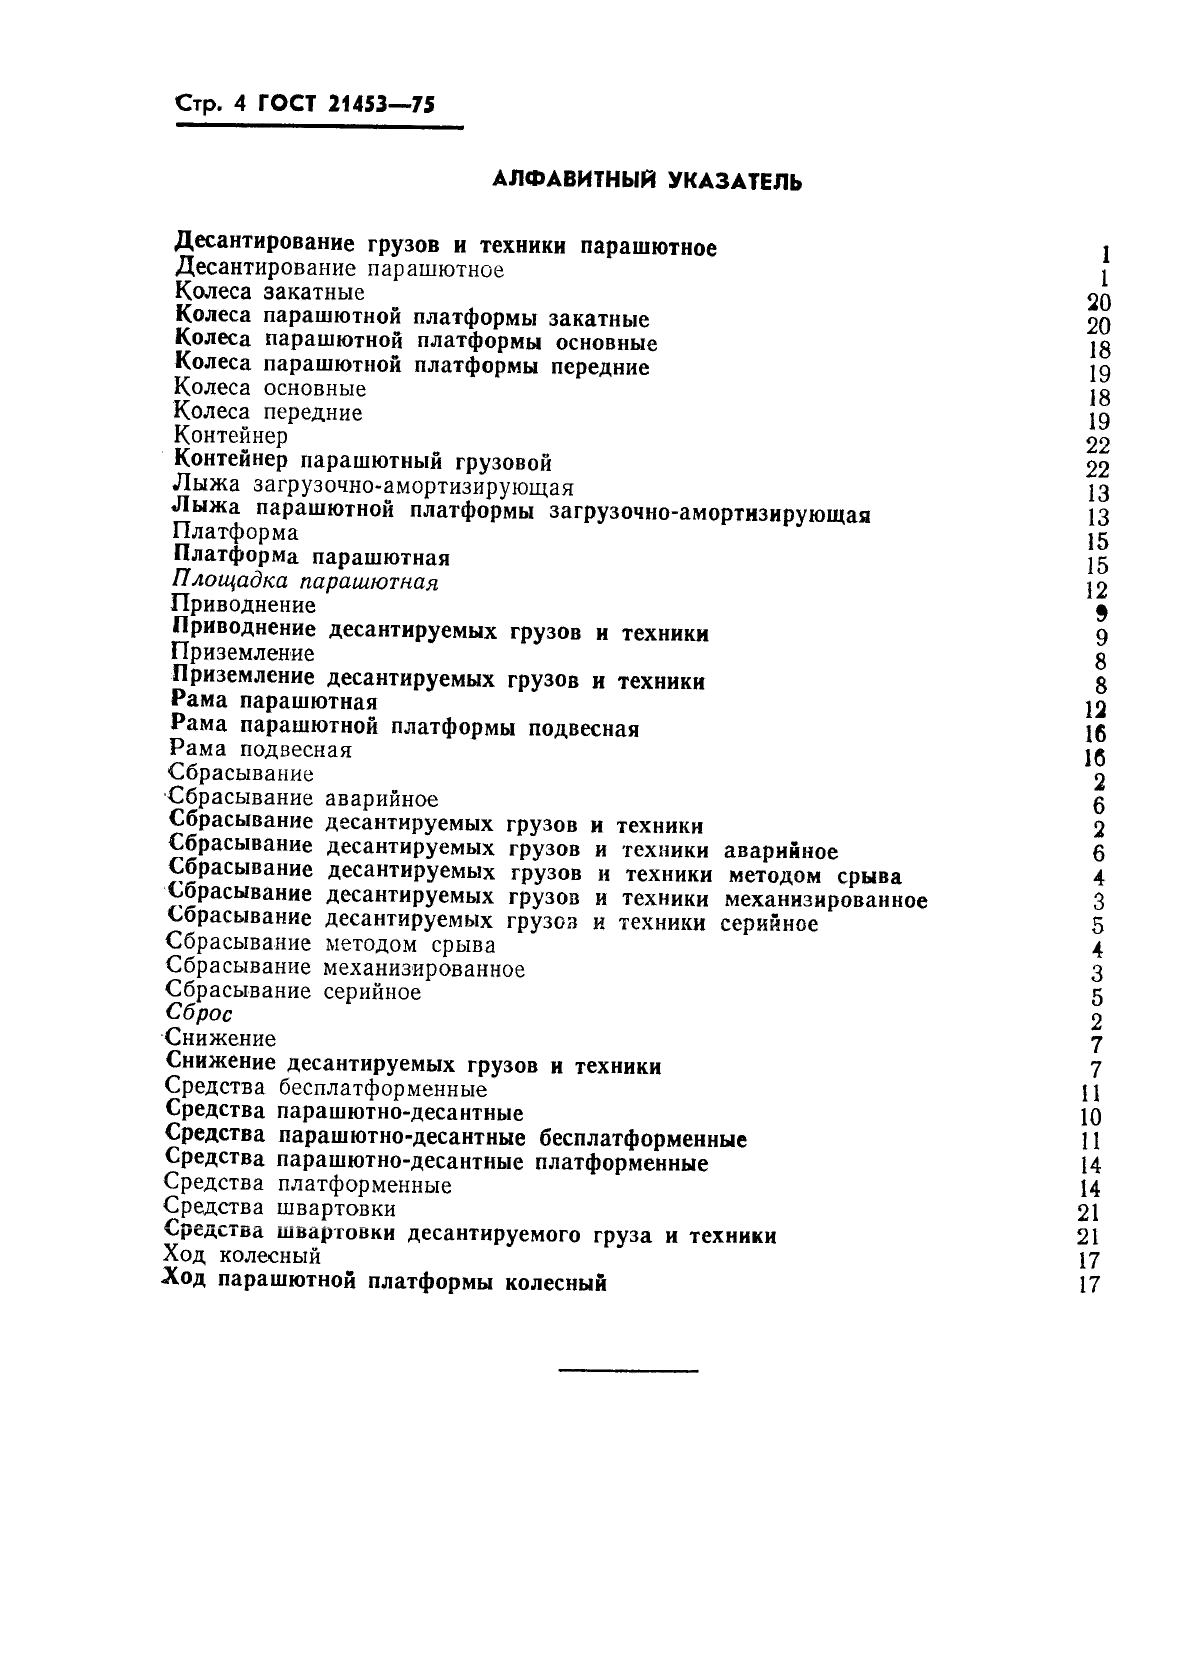 ГОСТ 21453-75 Средства парашютного десантирования грузов и техники. Термины и определения (фото 5 из 6)